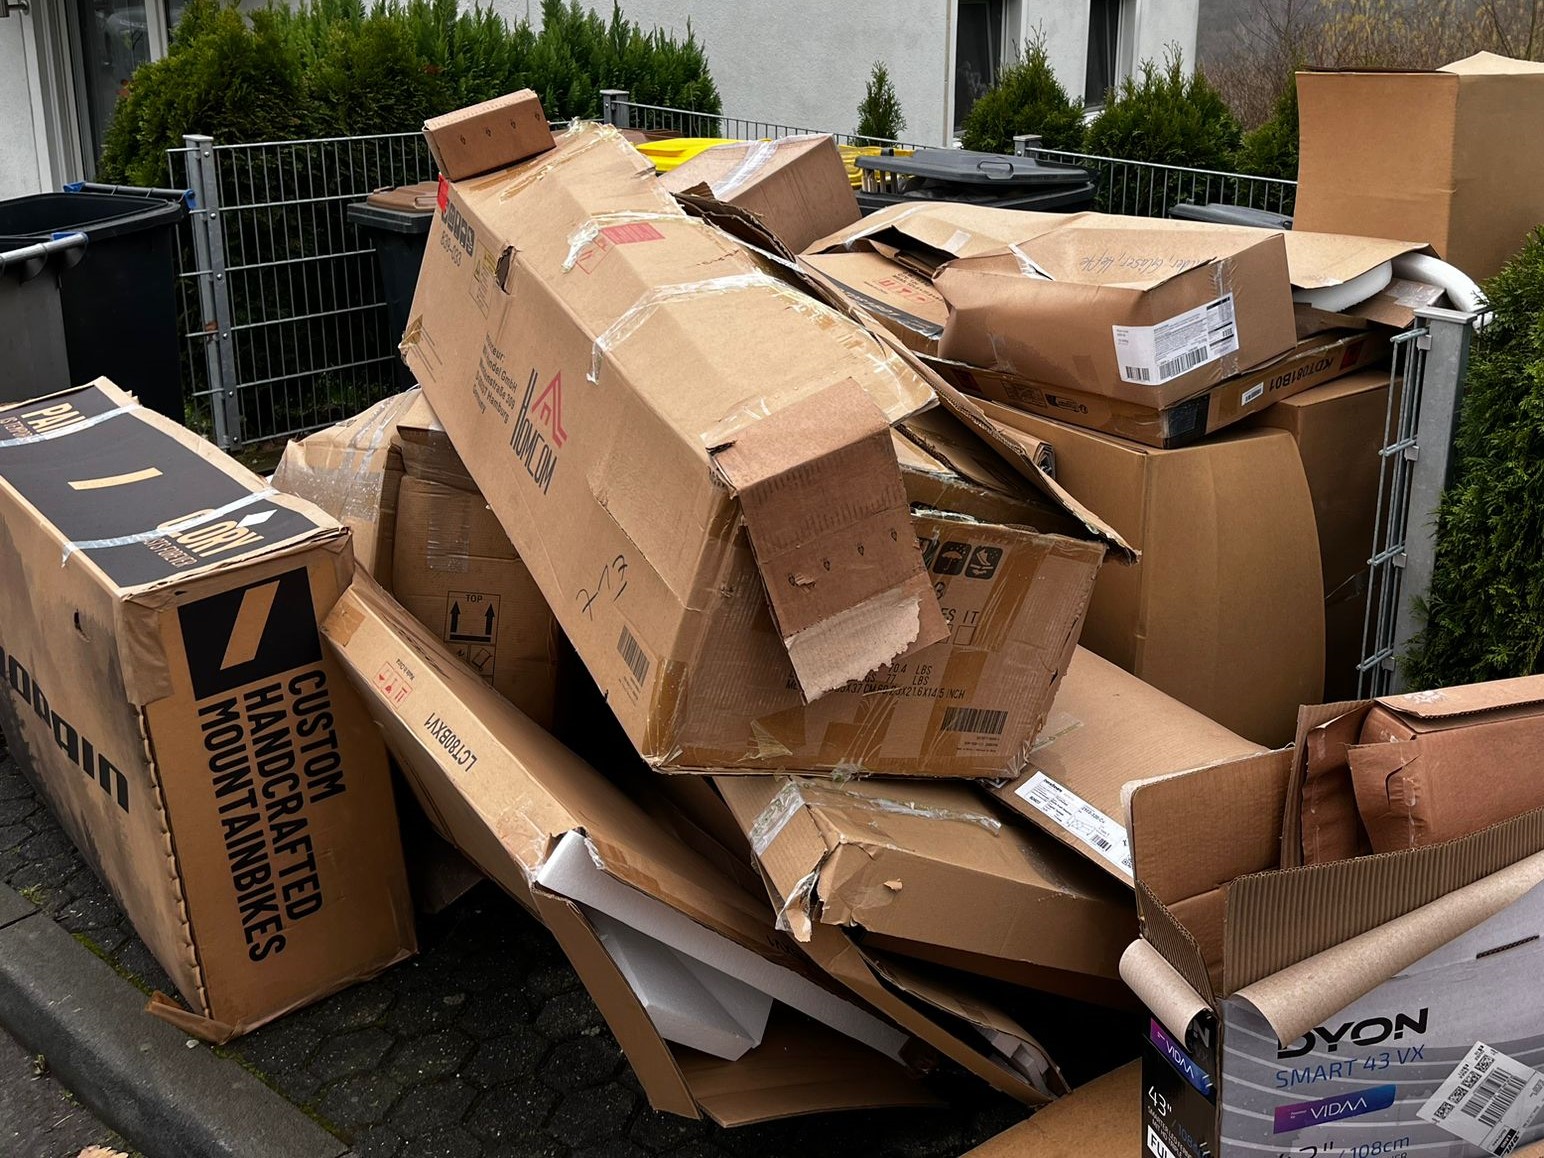 Eine Szene am Straßenrand, wo ein Stapel von Kartons wahllos gestapelt ist. Die Kartons variieren in Größe und Form, einige sind mit Aufklebern und Preisschildern versehen. Im Hintergrund ist eine Mülltonne zu sehen 